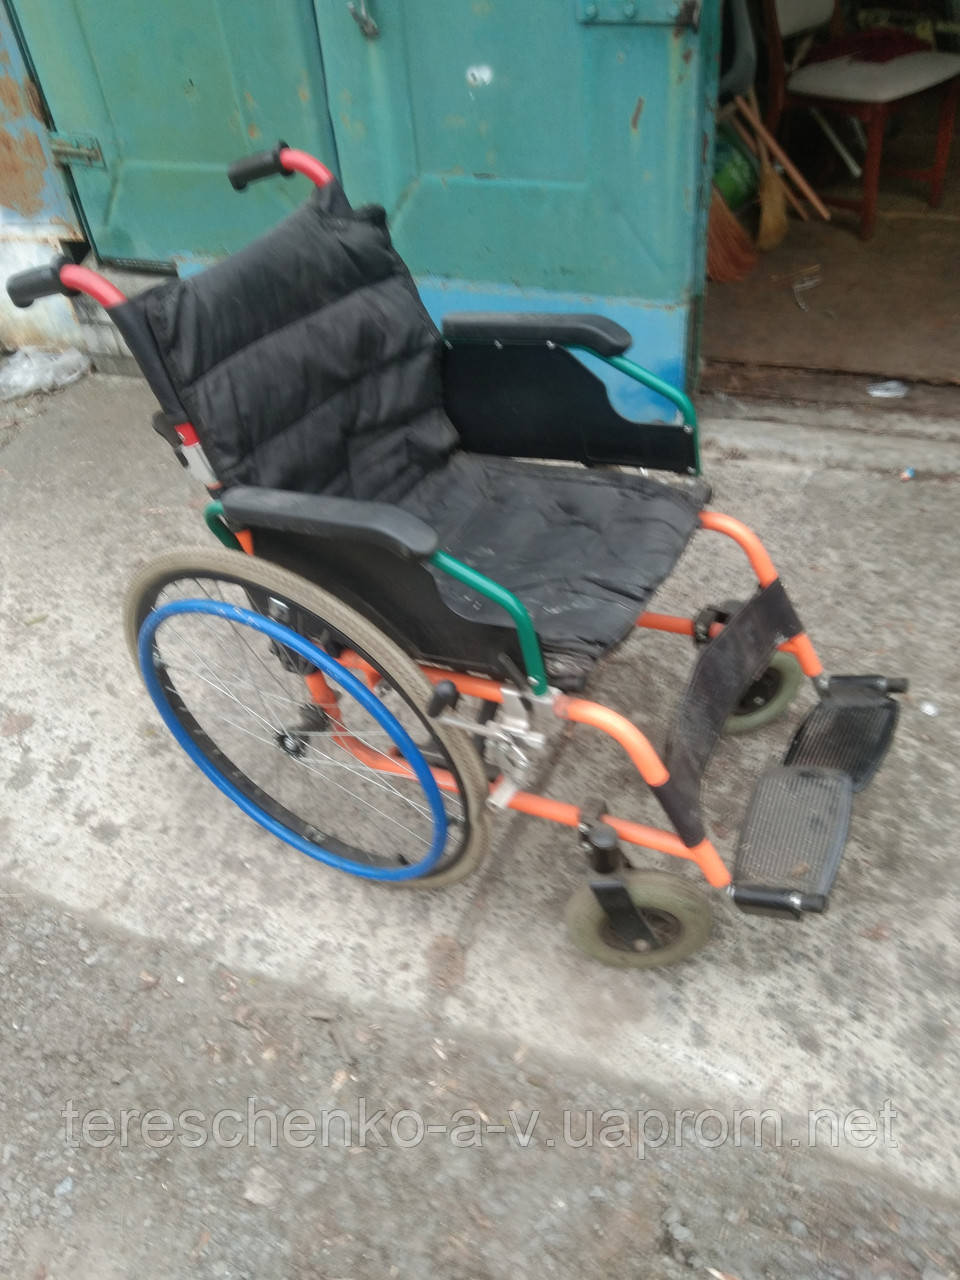 ІІнвалідна коляска